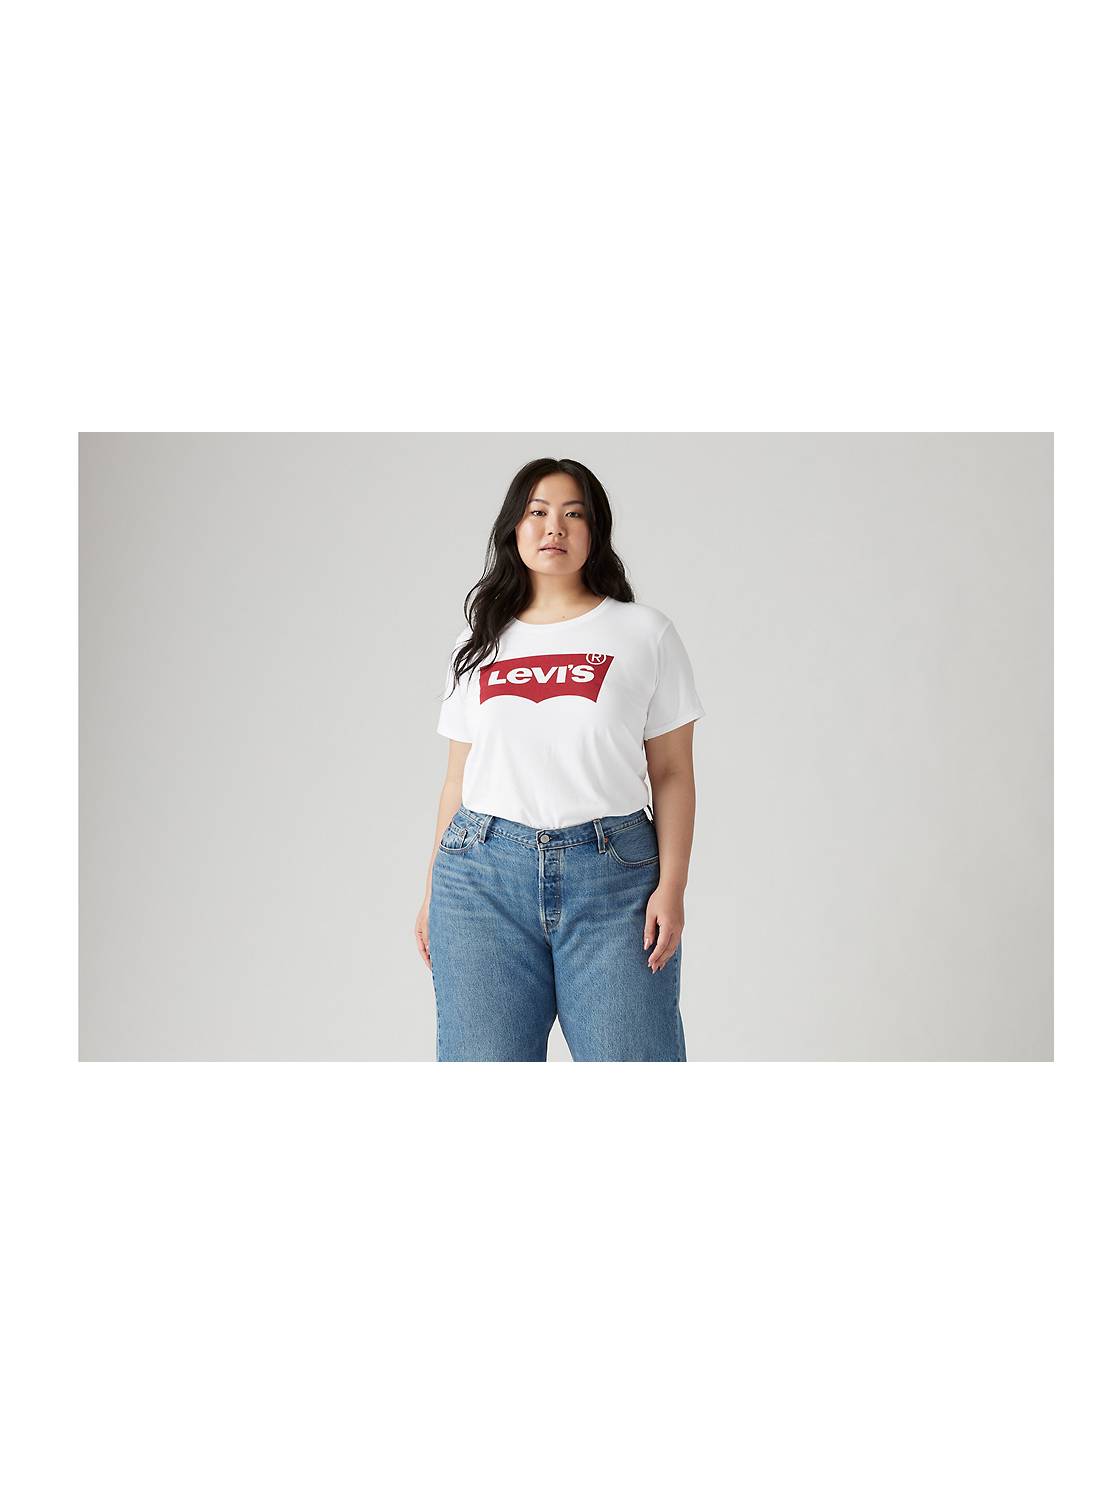 Women's Plus Size Tops - Shop Plus Size T-Shirts